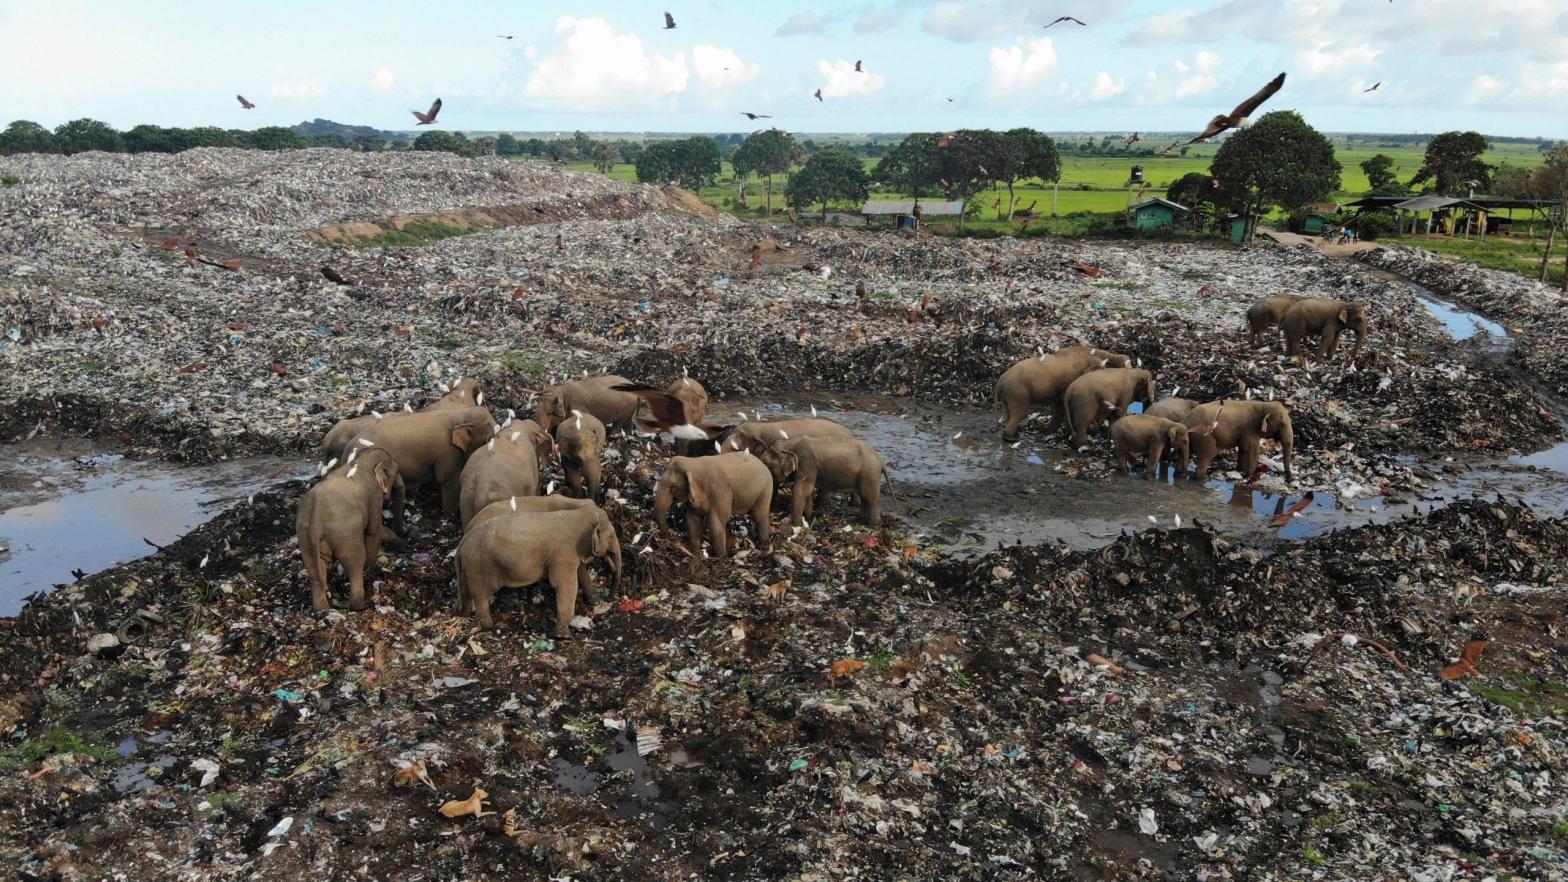 Wild elephants scavenge for food at an open landfill in Pallakkadu, Sri Lanka, on Jan. 6, 2022. (Photo: Achala Pussalla, AP)